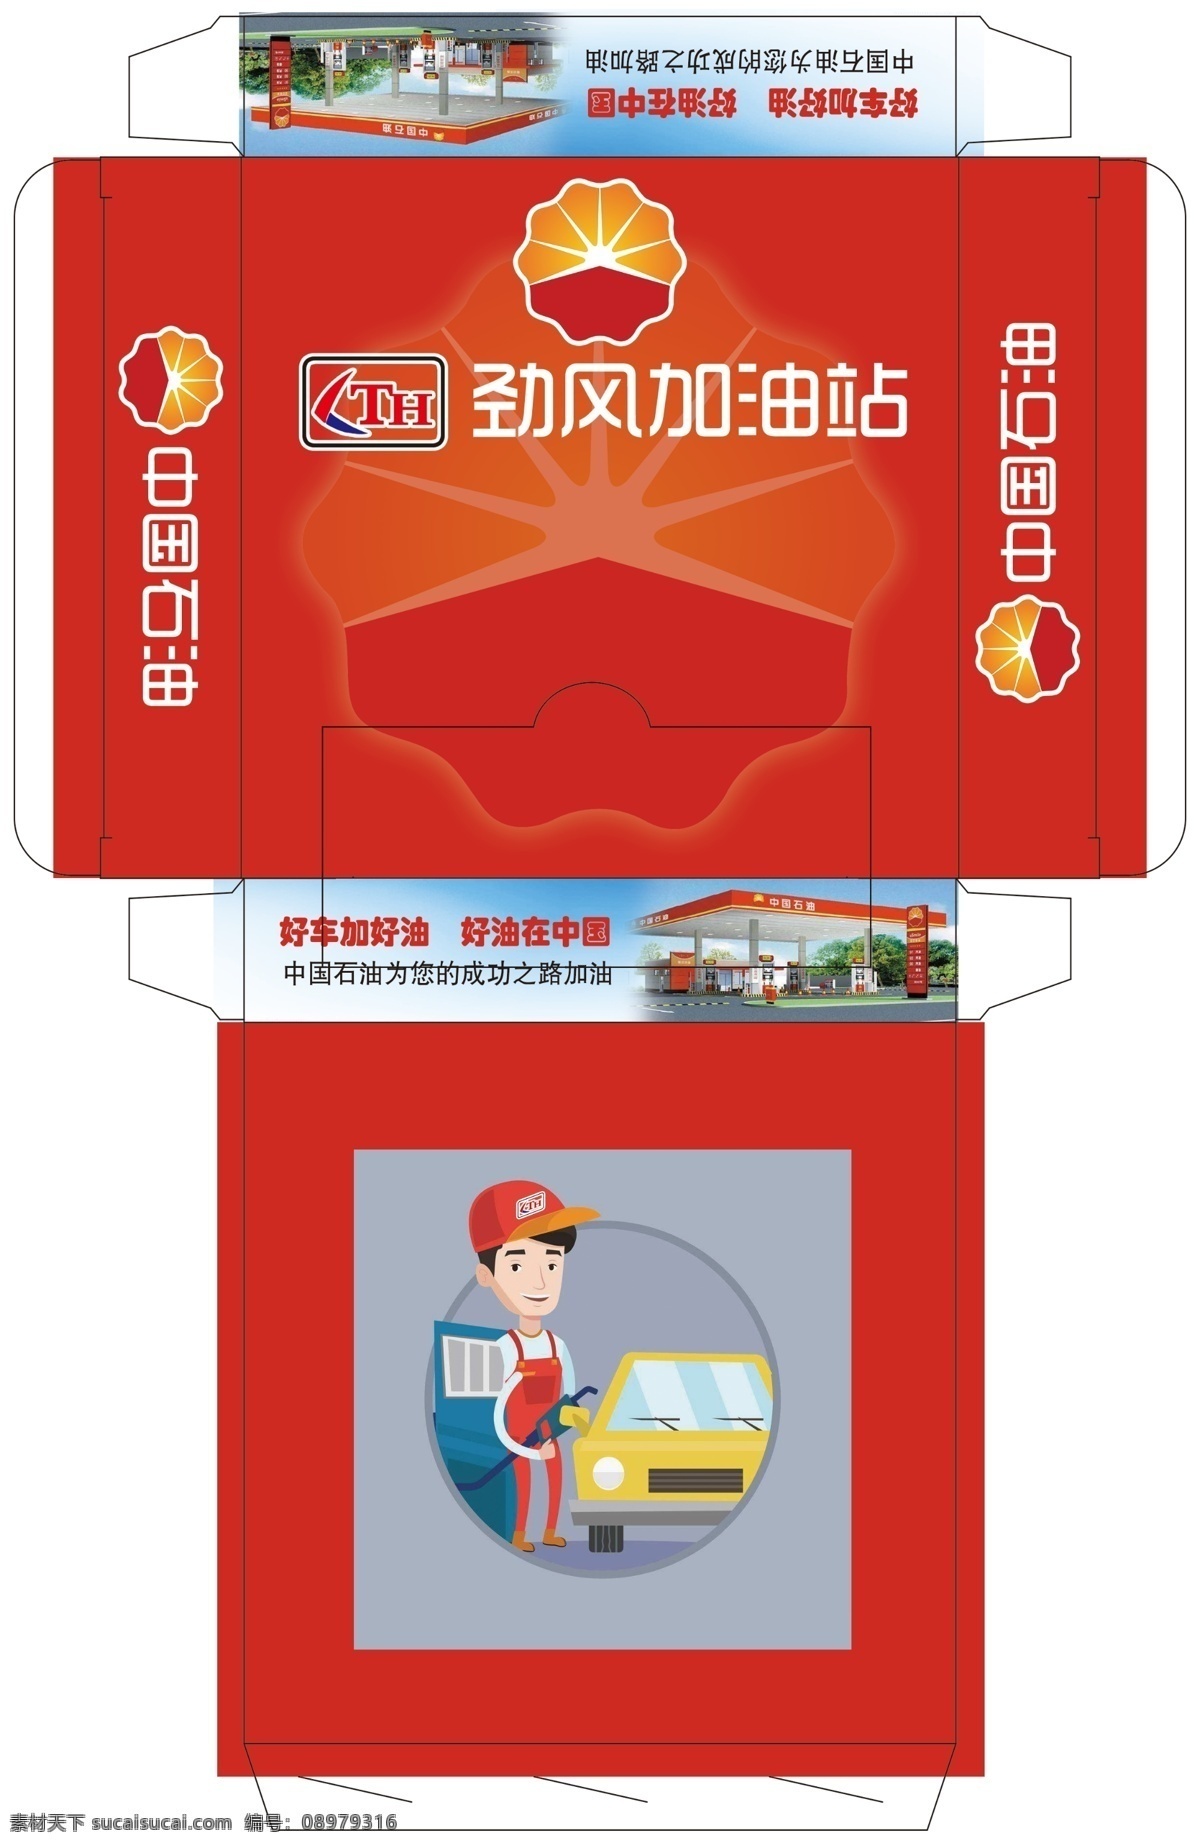 劲风 加油站 盒 抽 加油站盒抽 纸抽盒 加油员 中国石油 包装设计